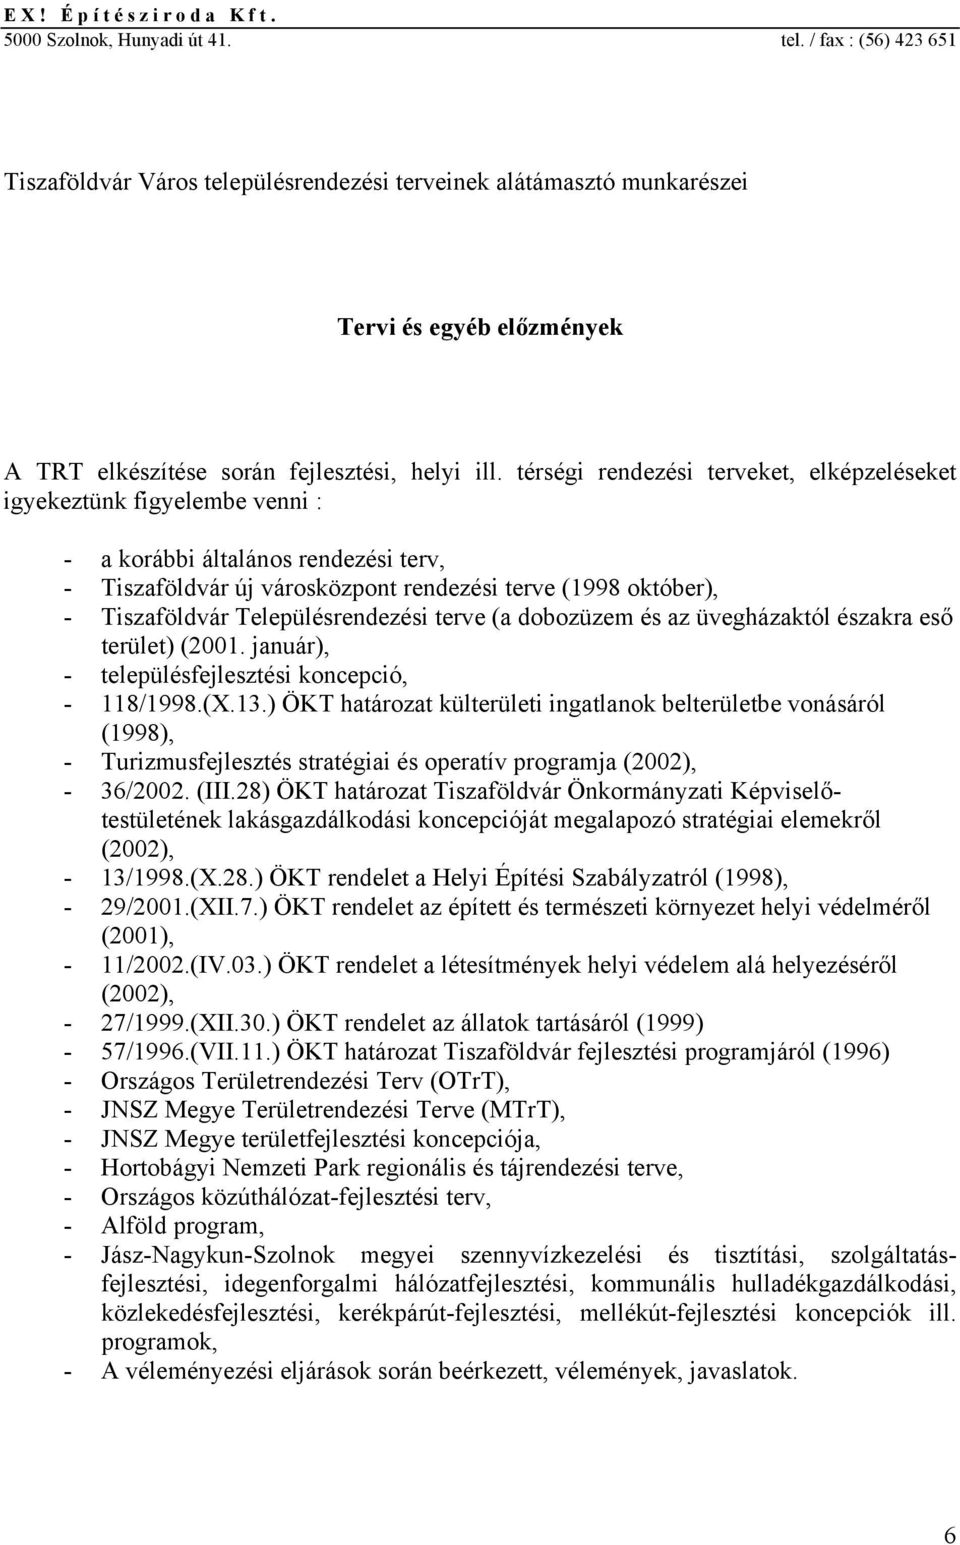 térségi rndzési trvkt, lképzléskt igykztünk figylmb vnni : - a korábbi általános rndzési trv, - Tiszaföldvár új városközpont rndzési trv (1998 októbr), - Tiszaföldvár Tlpülésrndzési trv (a dobozüzm